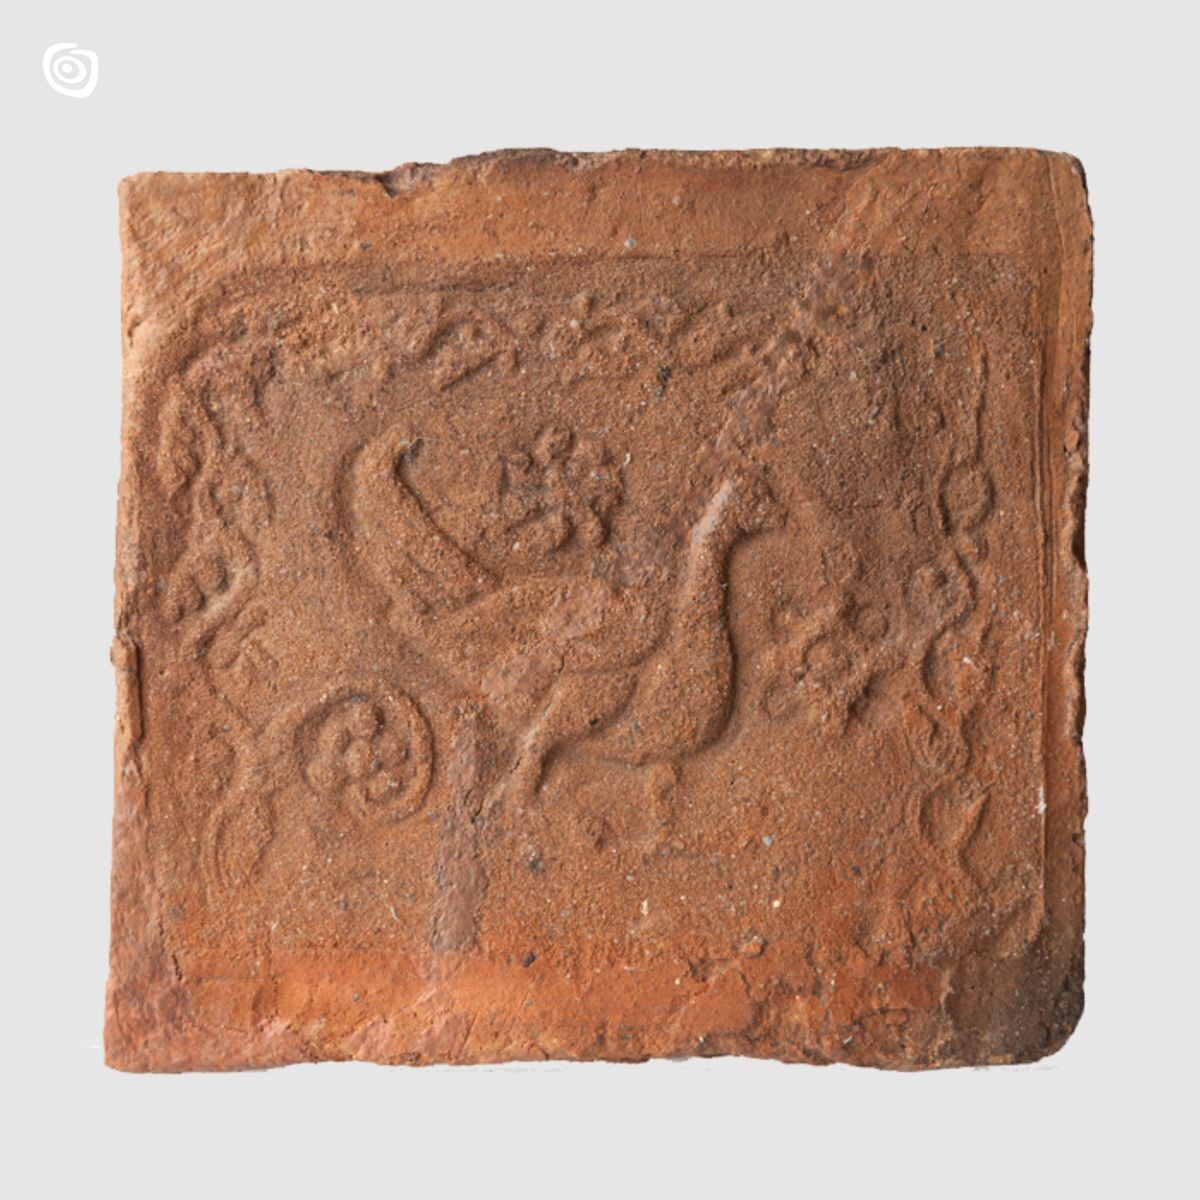 Płytka ceramiczna - Ptak, Gniezno, wczesne średniowiecze